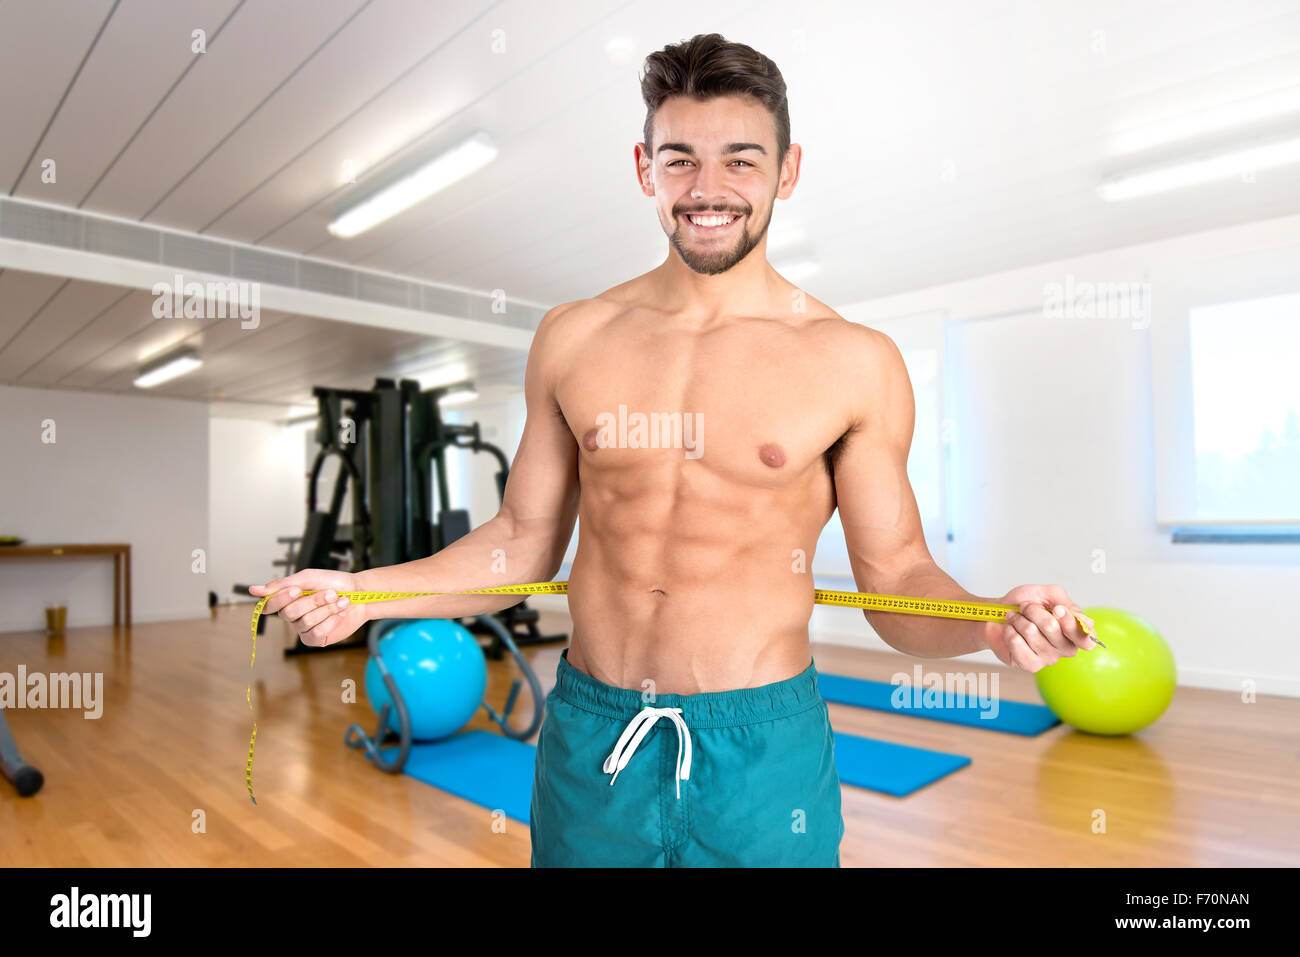 Muskulös und Fit junger Mann mit großen Bauchmuskeln und Maßband in der Turnhalle Stockfoto